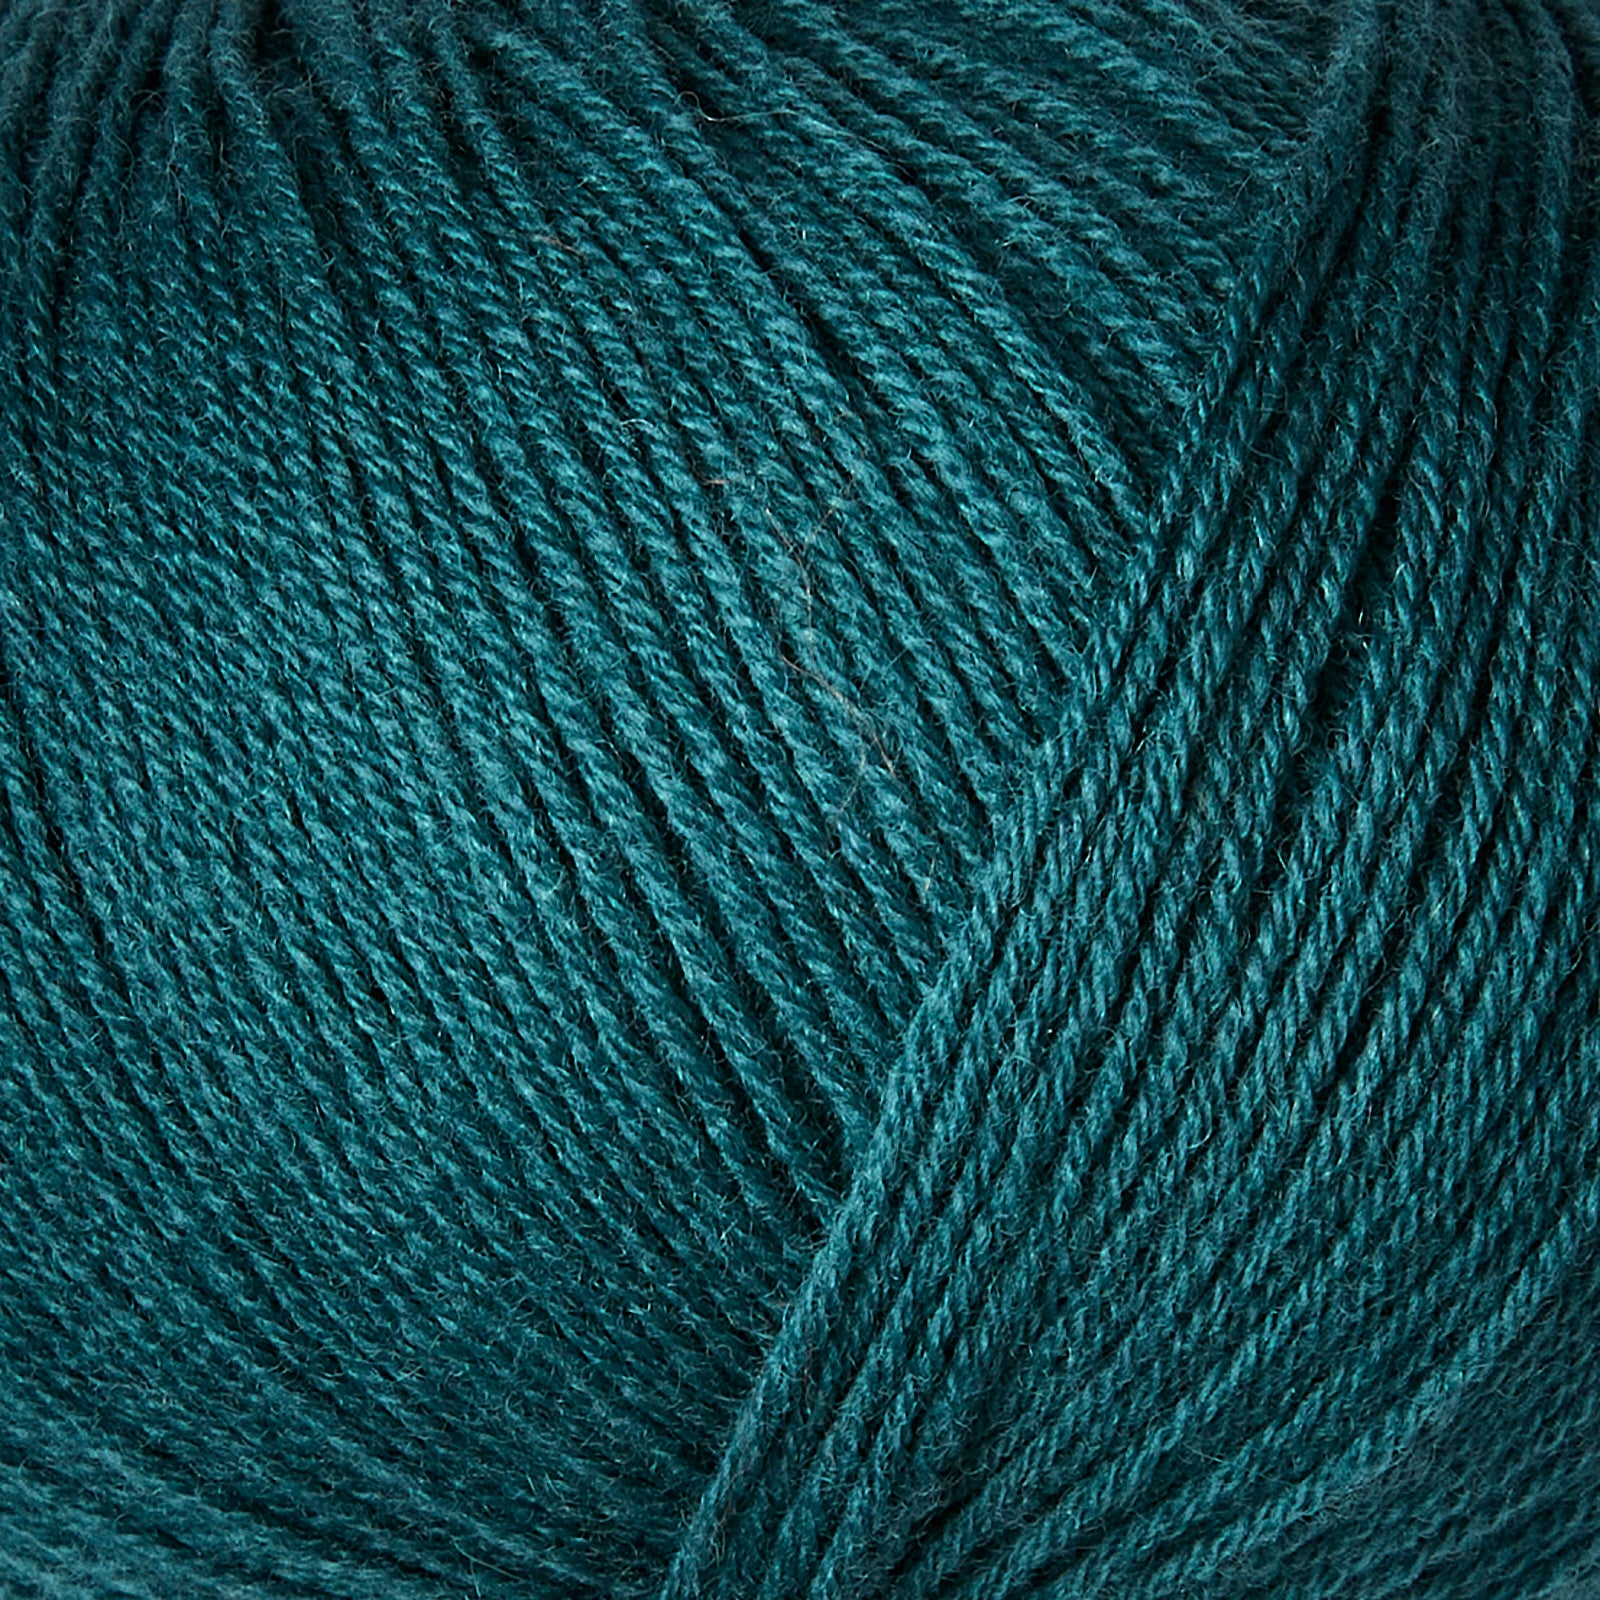 Knitting for Olive Merino - Petroleum Green